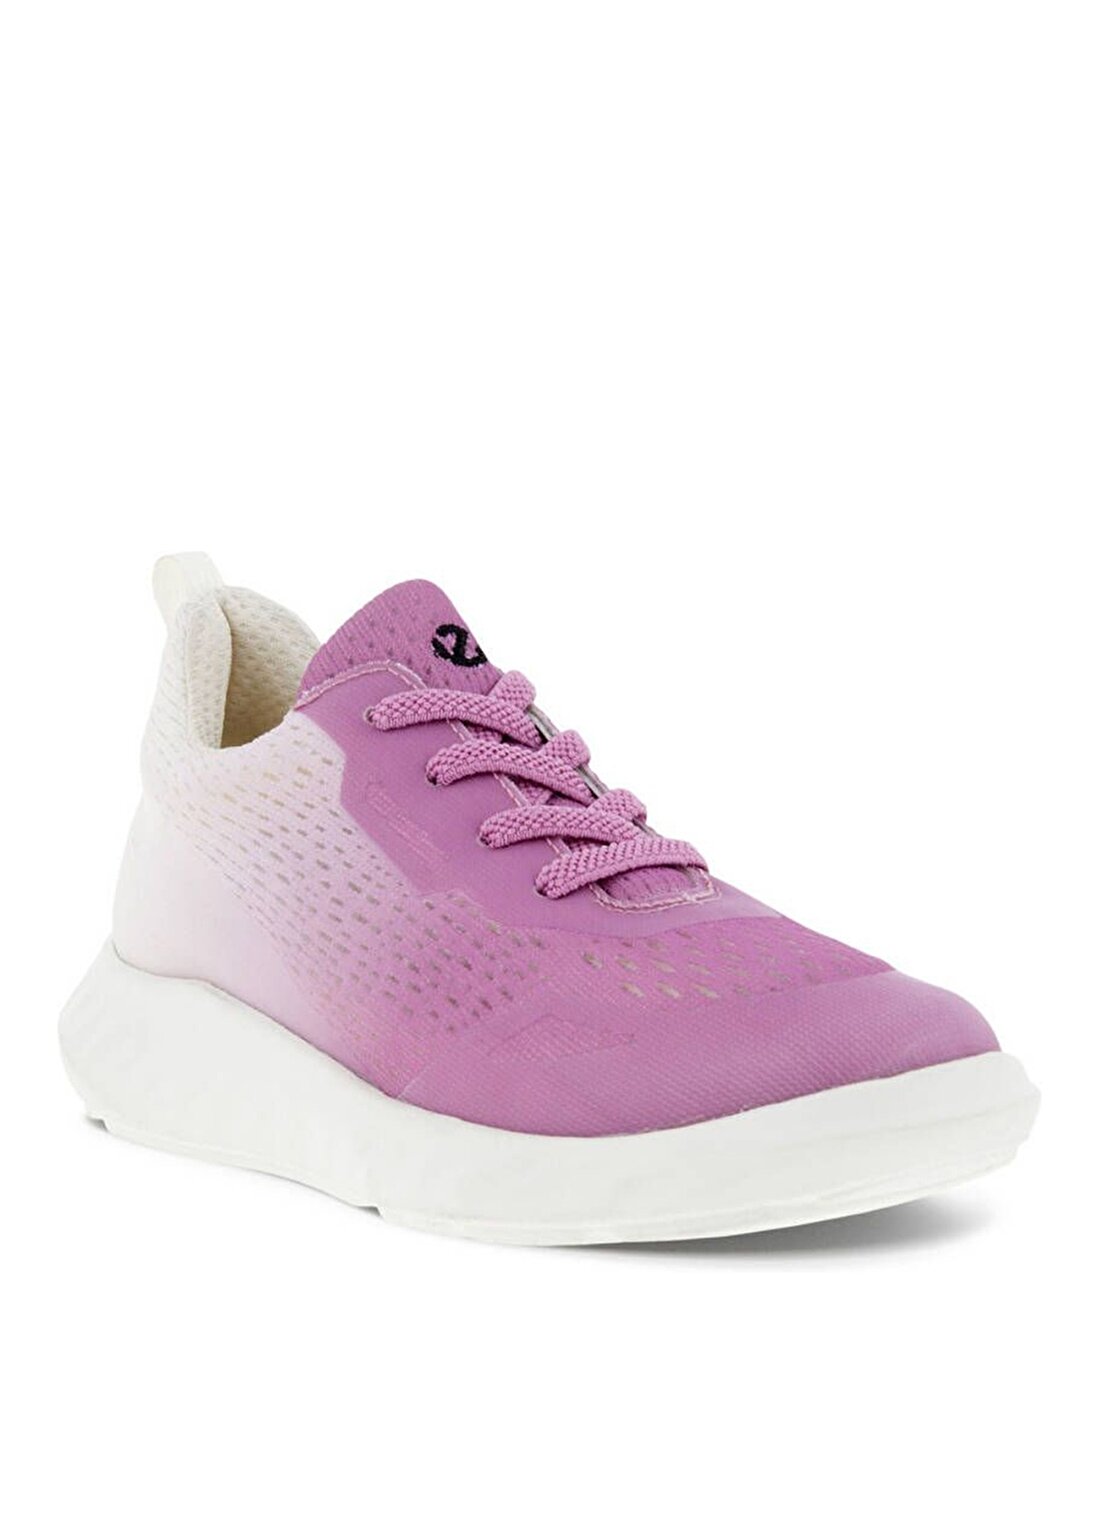 Ecco Pembe Kız Çocuk Günlük Ayakkabı SP1 Lite K Pink Textile